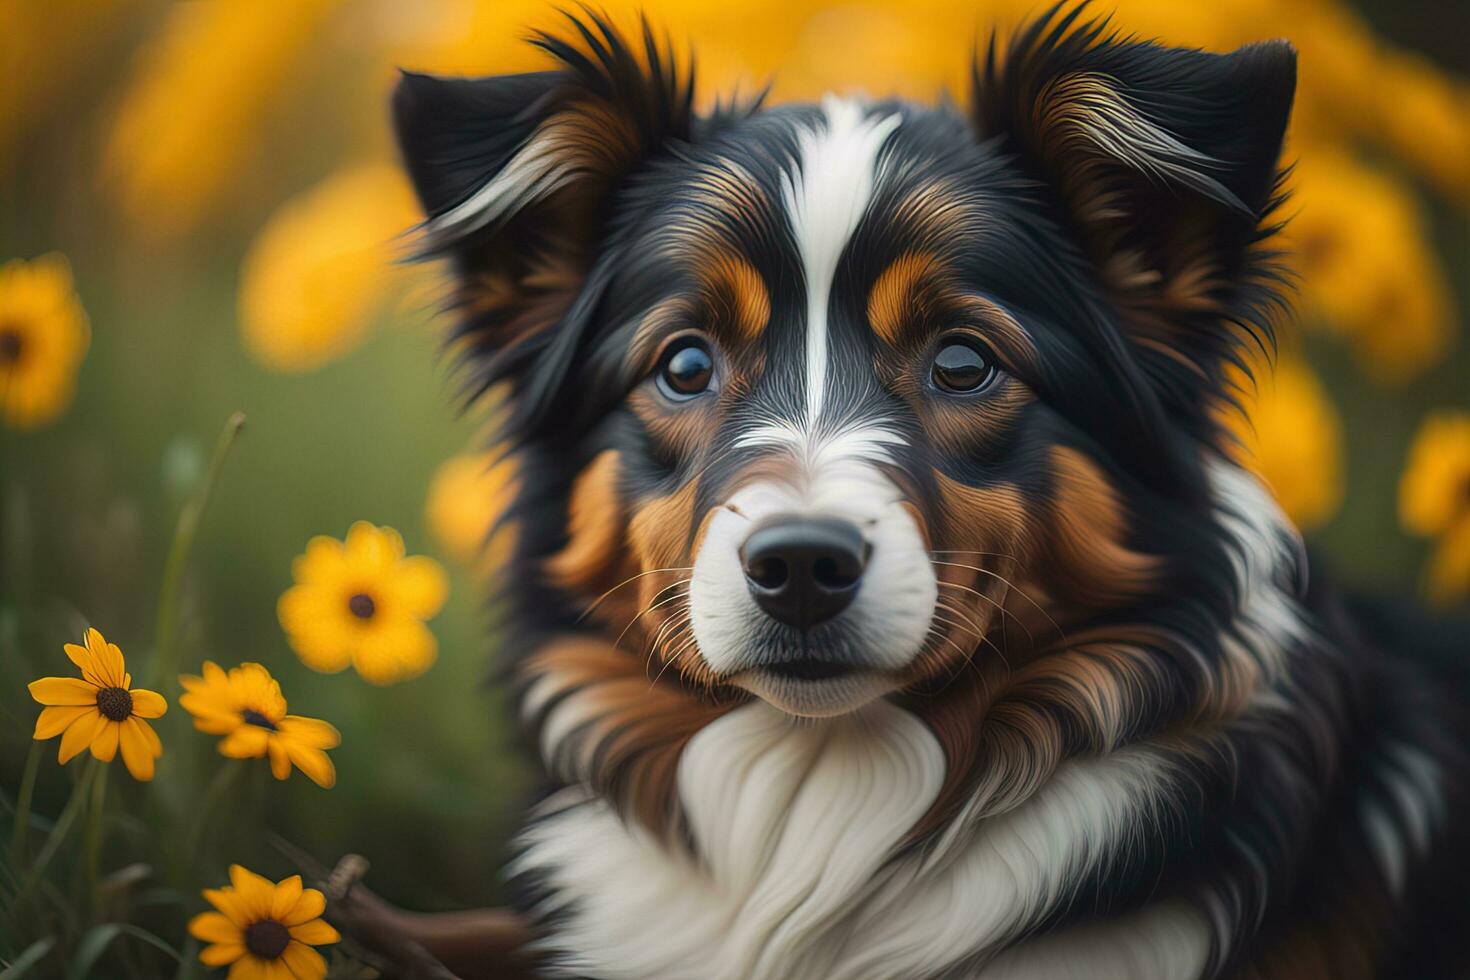 porträtt av en söt hund på en färgrik bakgrund. studio skott. ai generativ foto